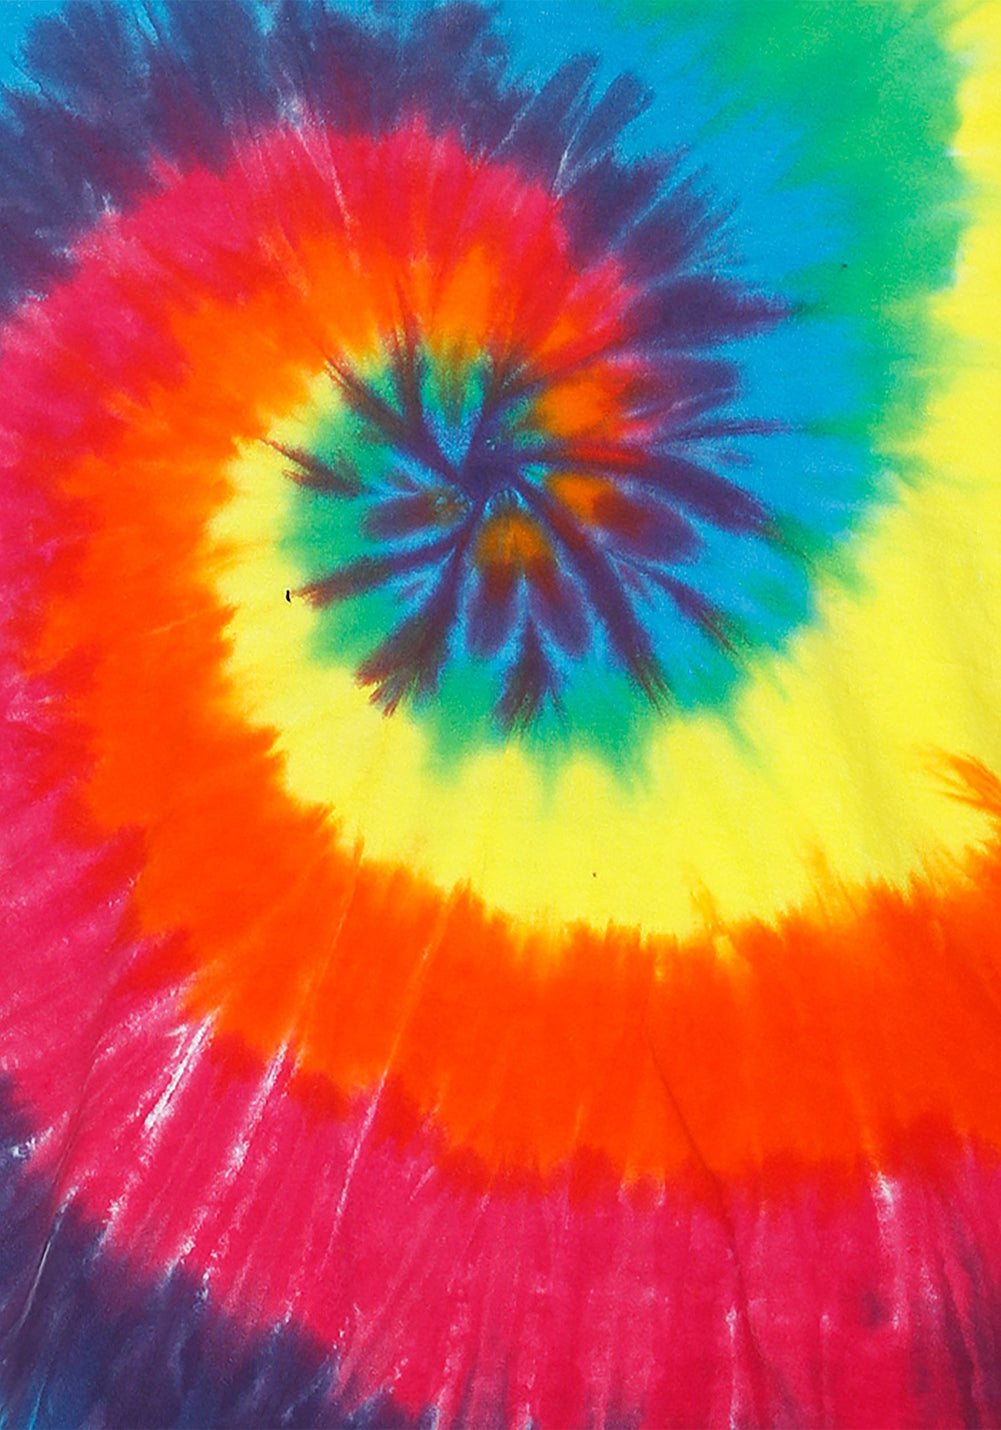 Rainbow Spiral Tie Dye Toddler T-shirt